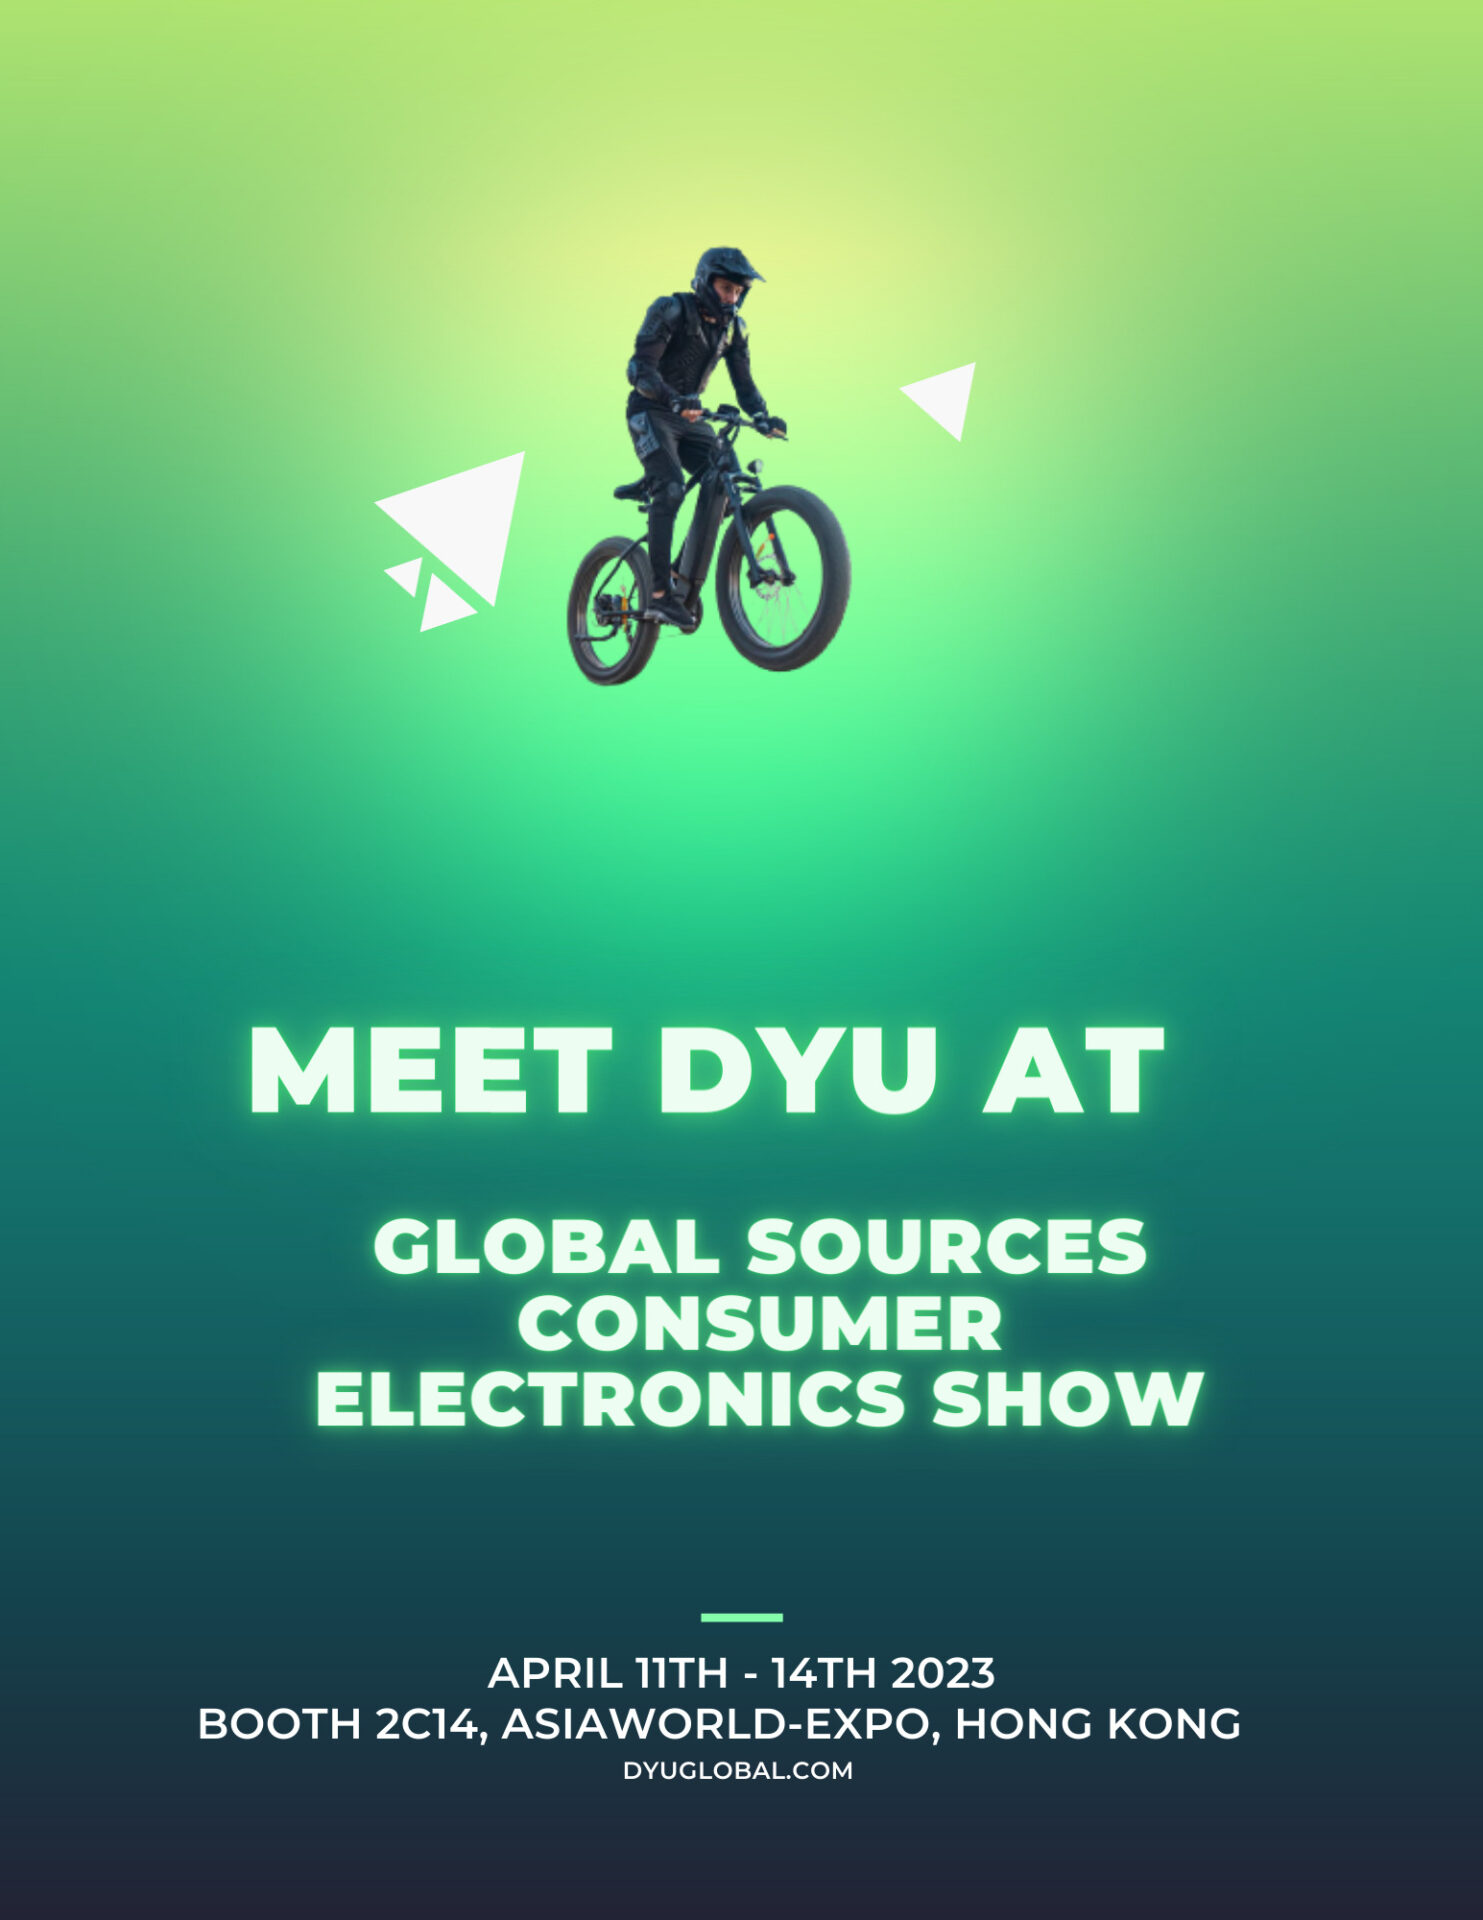 DYU partecipa al Global Sources Consumer Electronics Show di Hong Kong